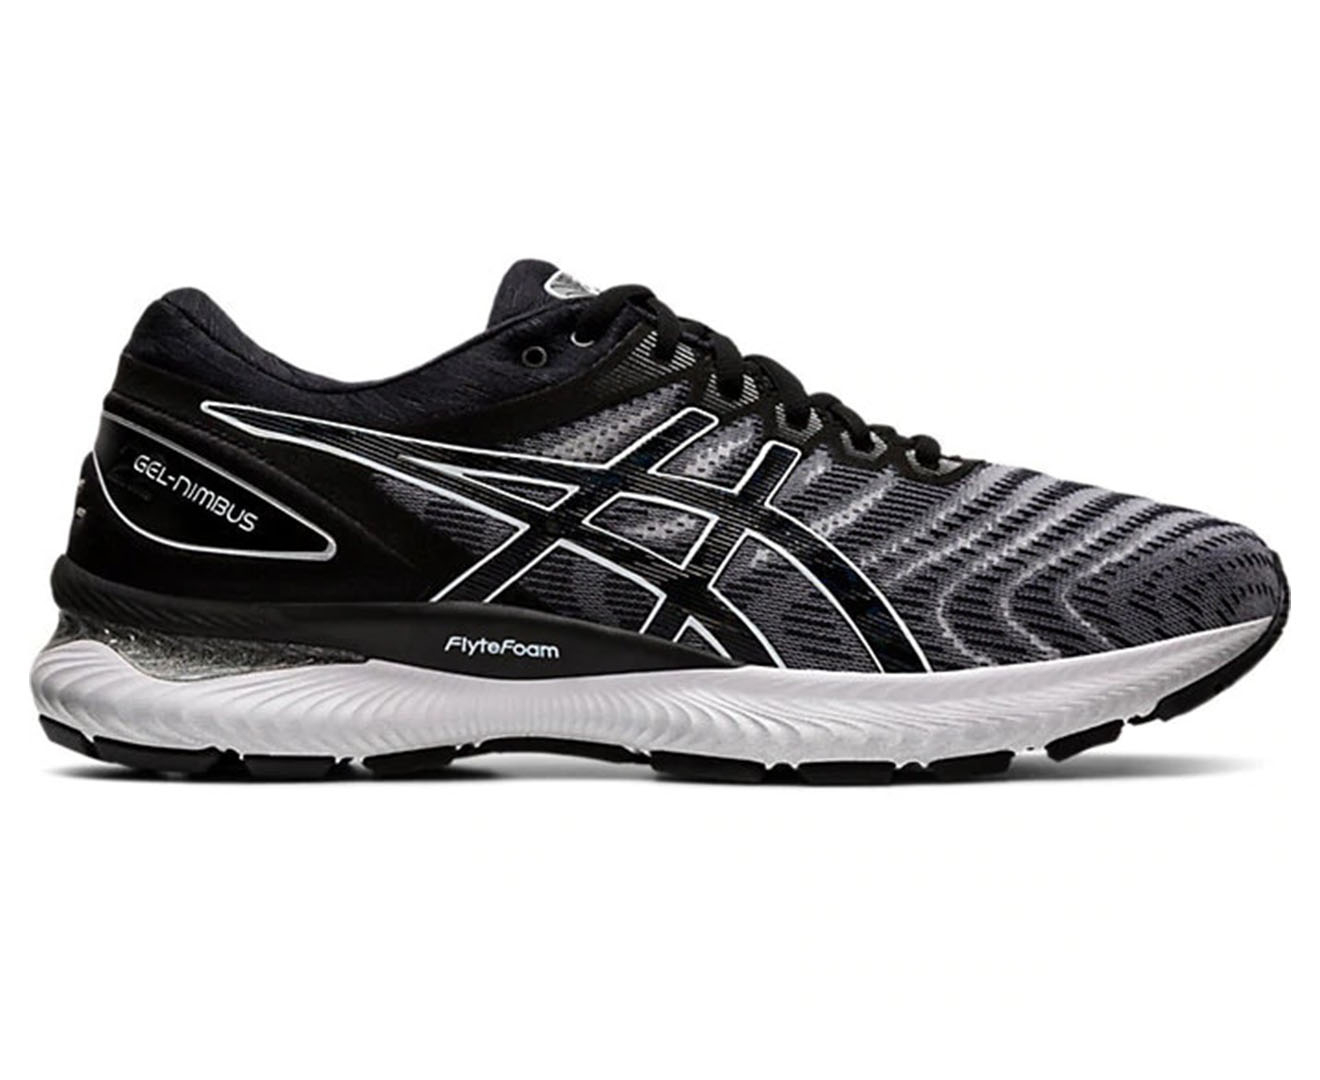 ASICS Men's GEL-Nimbus 22 Running Shoes - White/Black | Catch.com.au